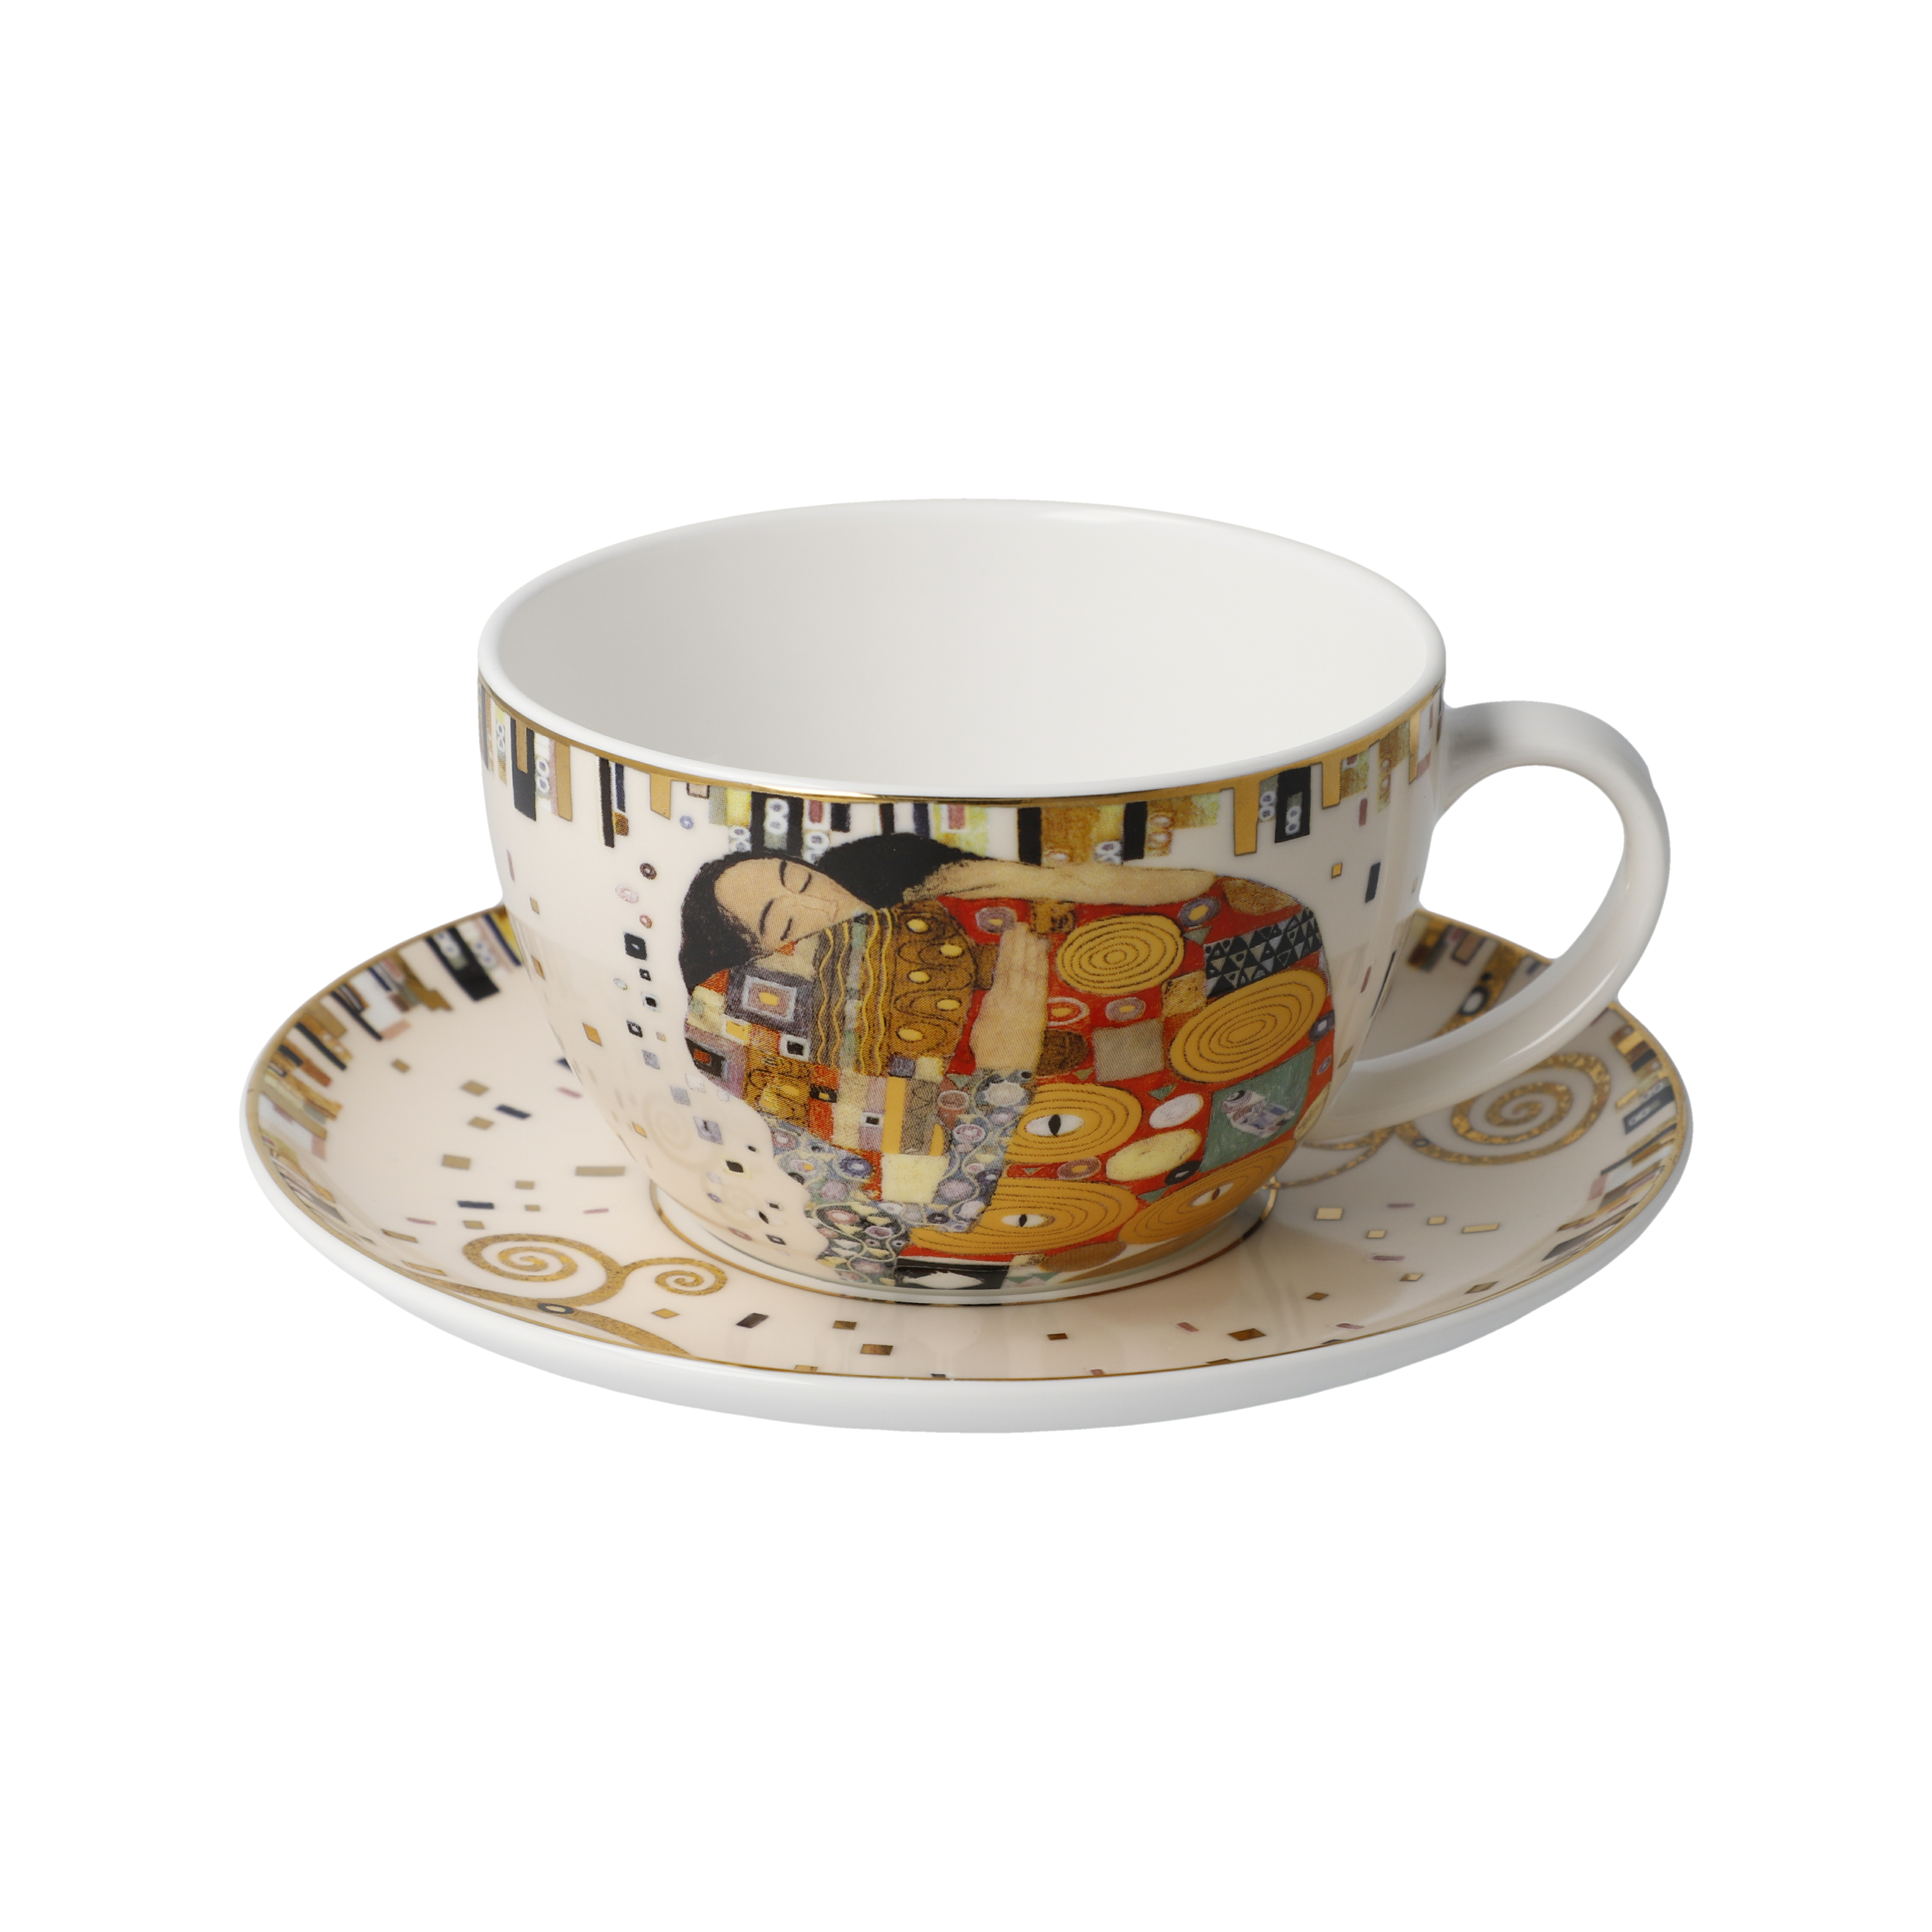 Fulfilment - Artis Orbis Gustav Klimt 茶或咖啡杯連底碟